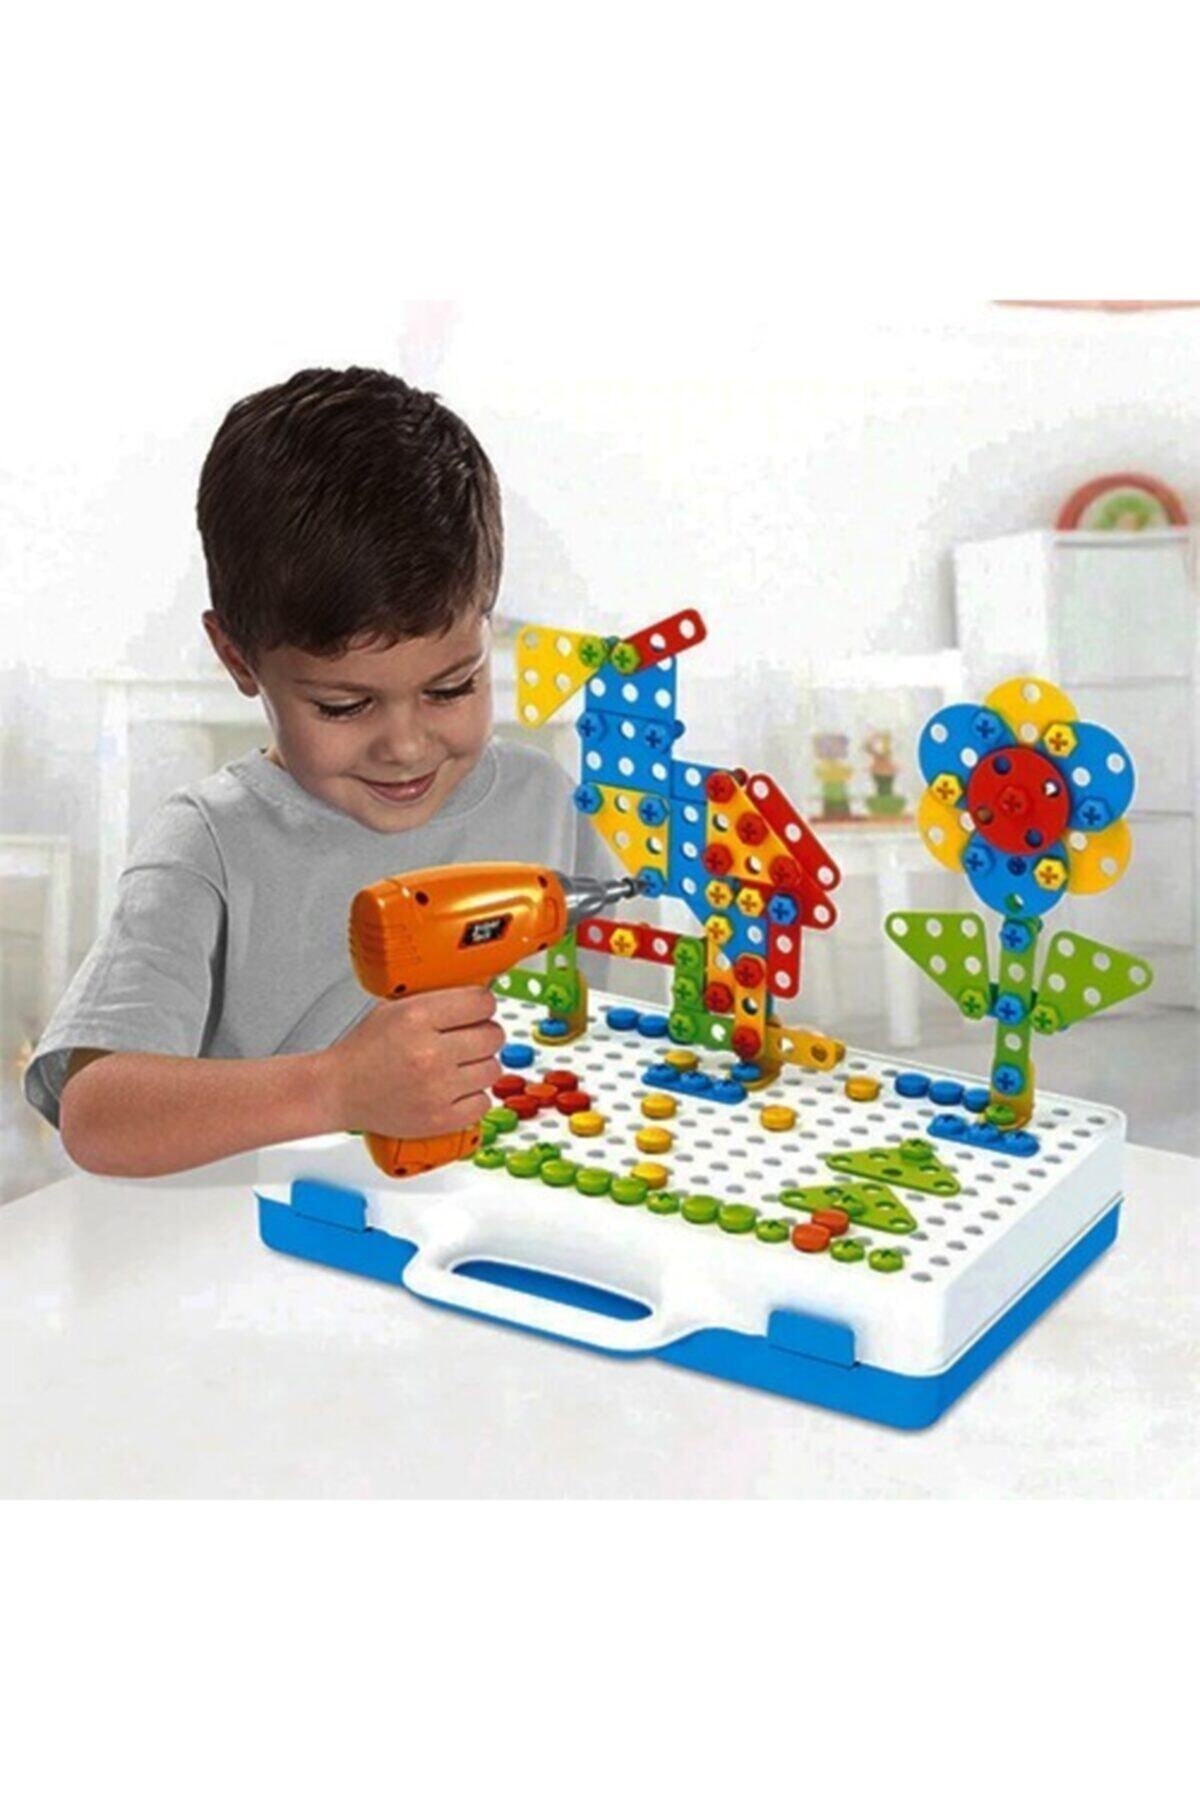 jetlegelsin Matkaplı Vidalama Ve 3d Yaratıcı Mozaik Puzzle 340 Parça Creative Portable Box Yapı Lego Oyunu